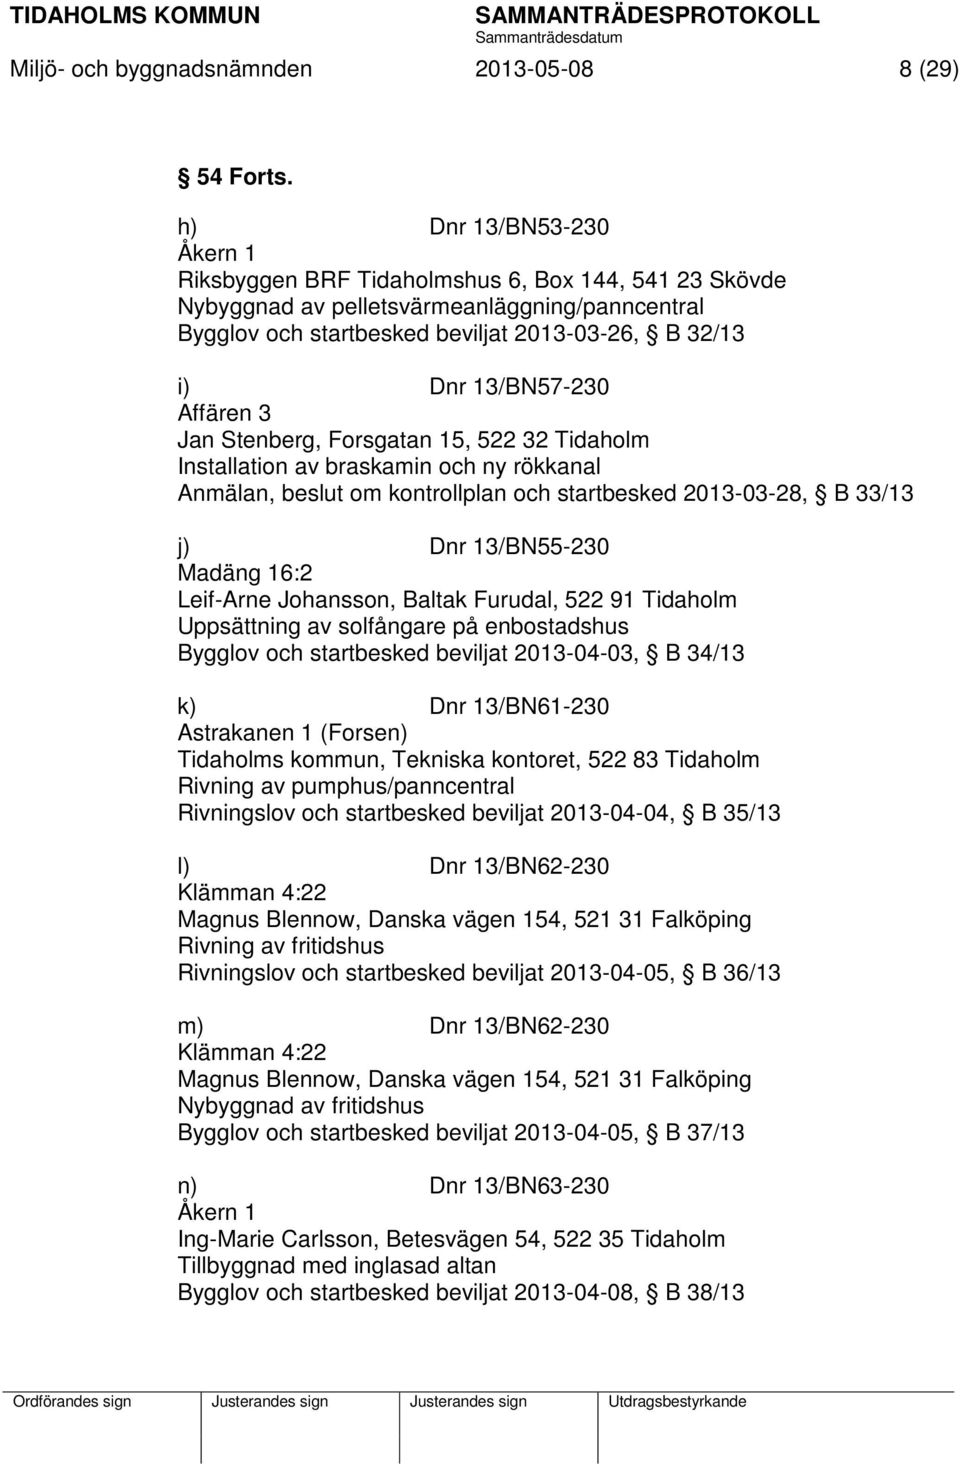 13/BN57-230 Affären 3 Jan Stenberg, Forsgatan 15, 522 32 Tidaholm Installation av braskamin och ny rökkanal Anmälan, beslut om kontrollplan och startbesked 2013-03-28, B 33/13 j) Dnr 13/BN55-230